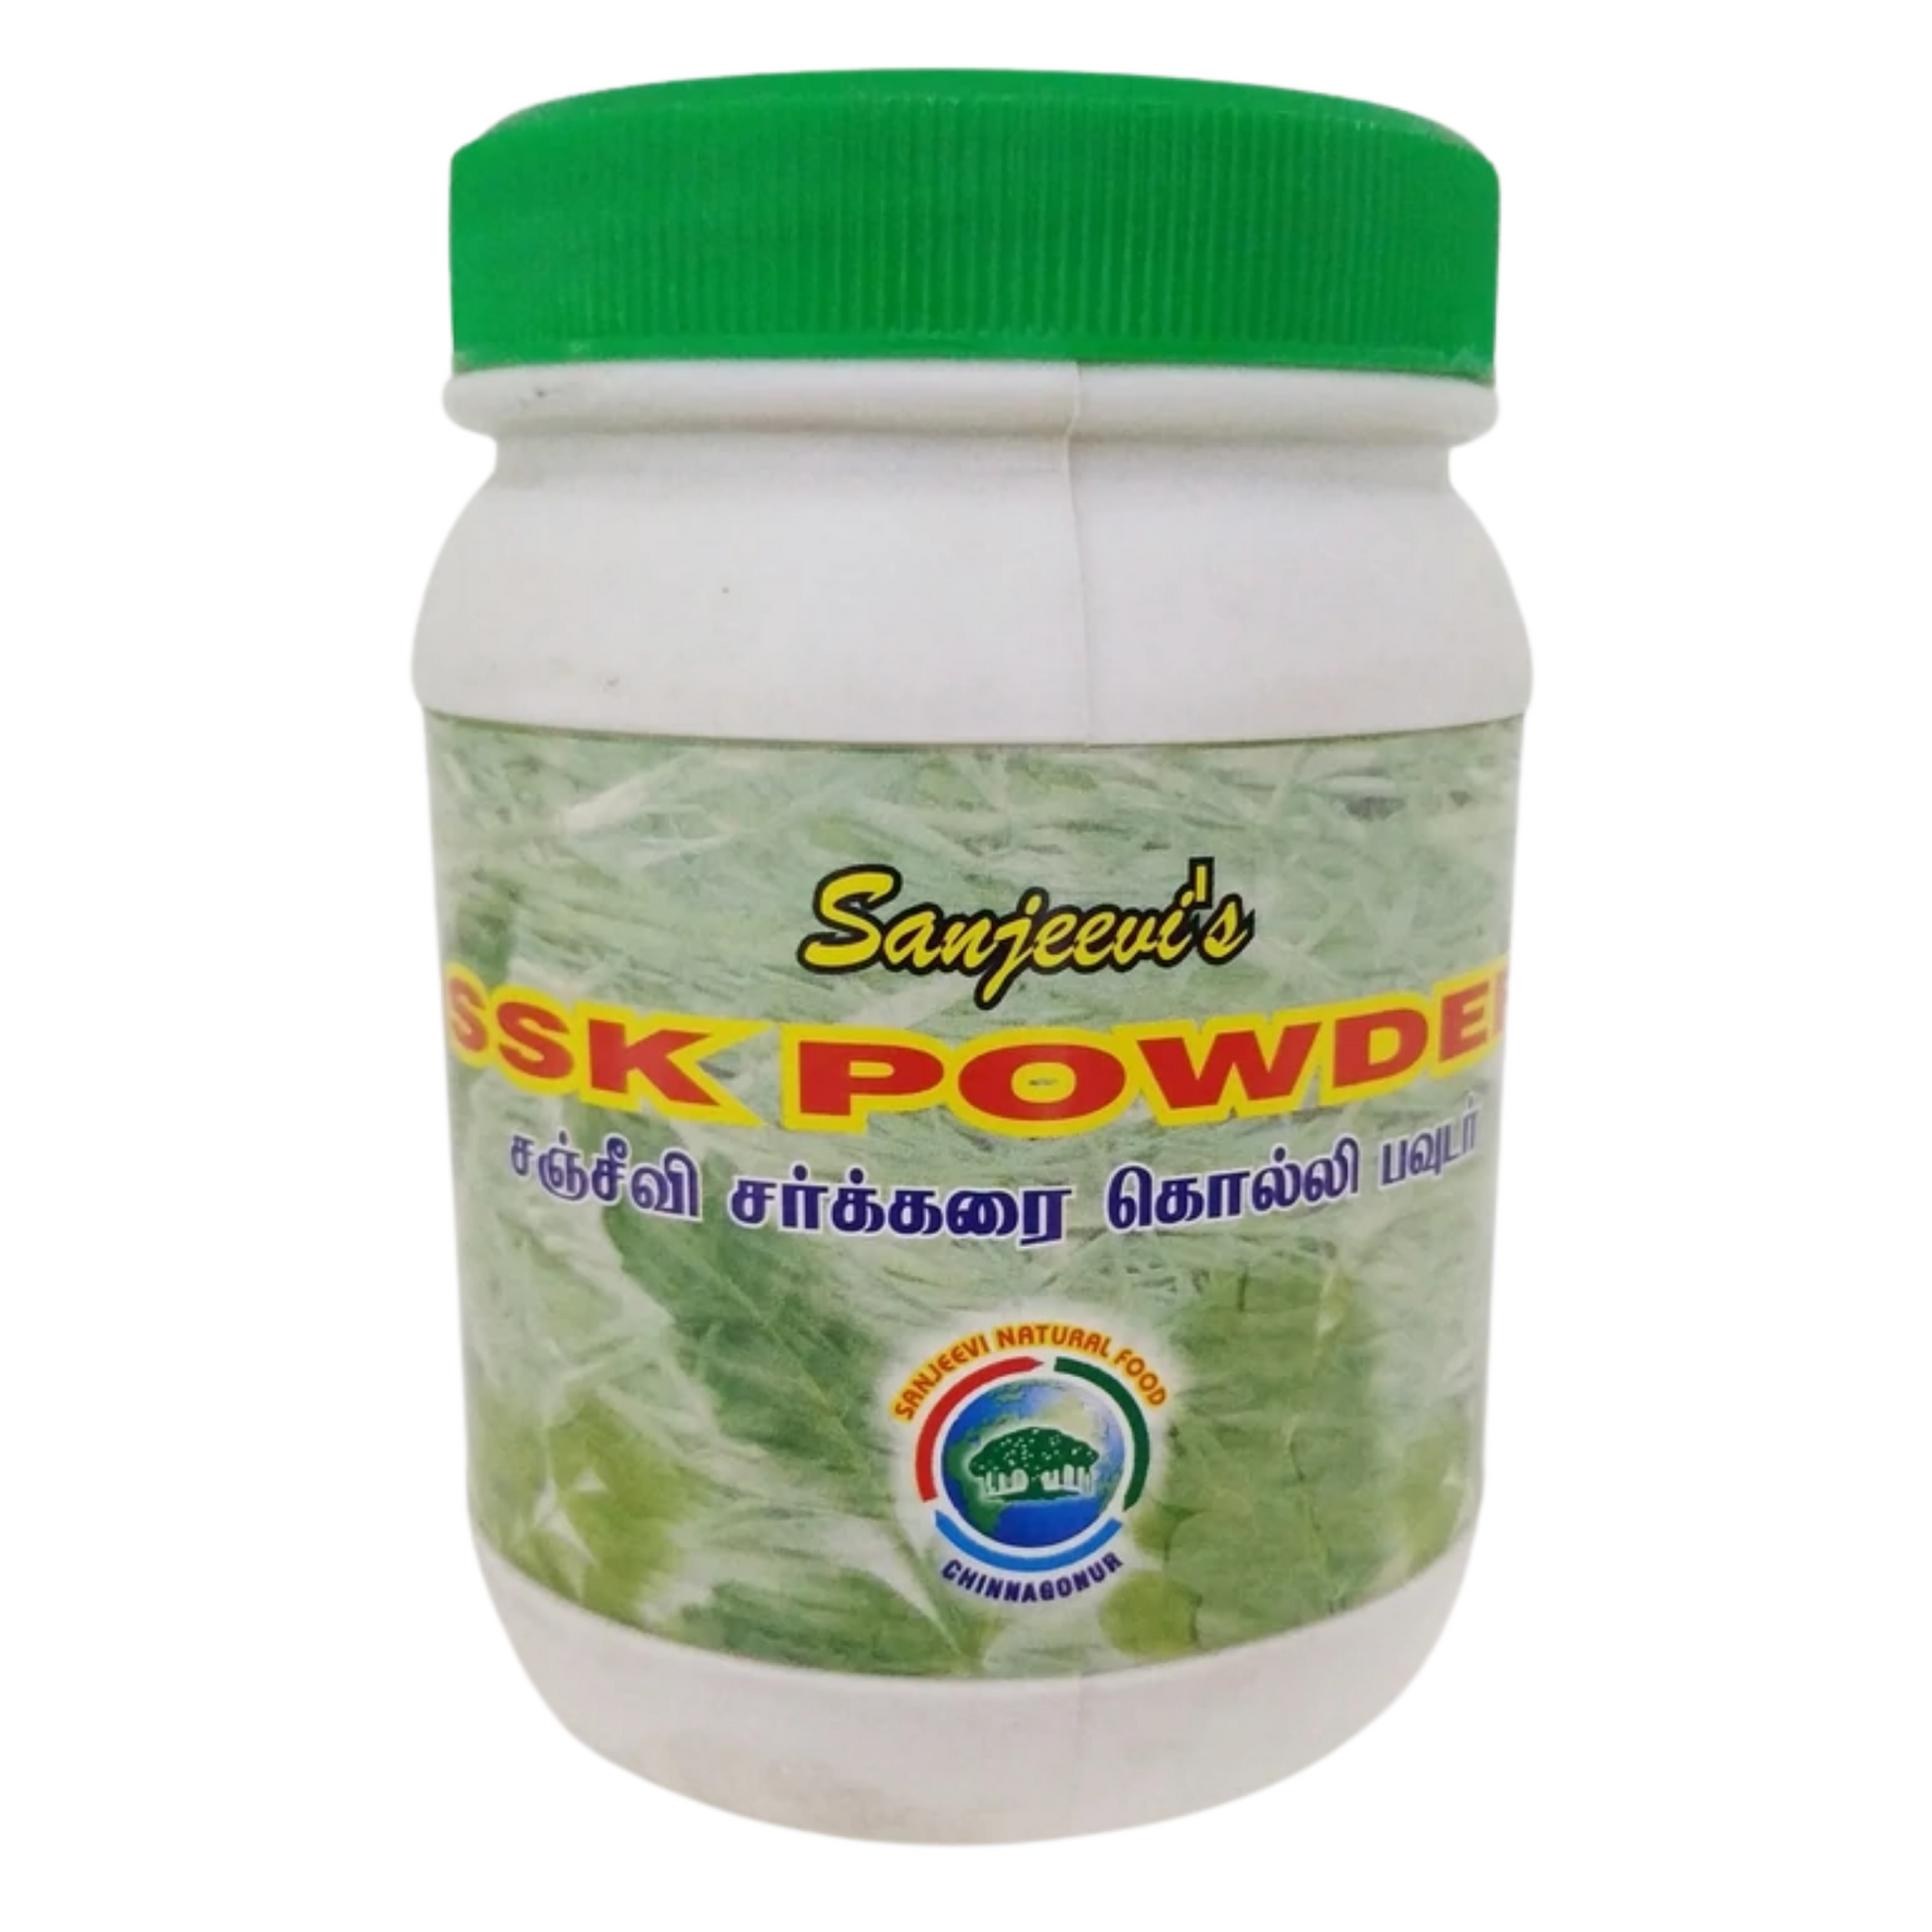 SSK Powder 180gm Sarkarai Kolli Churanam -  Sanjeevi - Medizzo.com